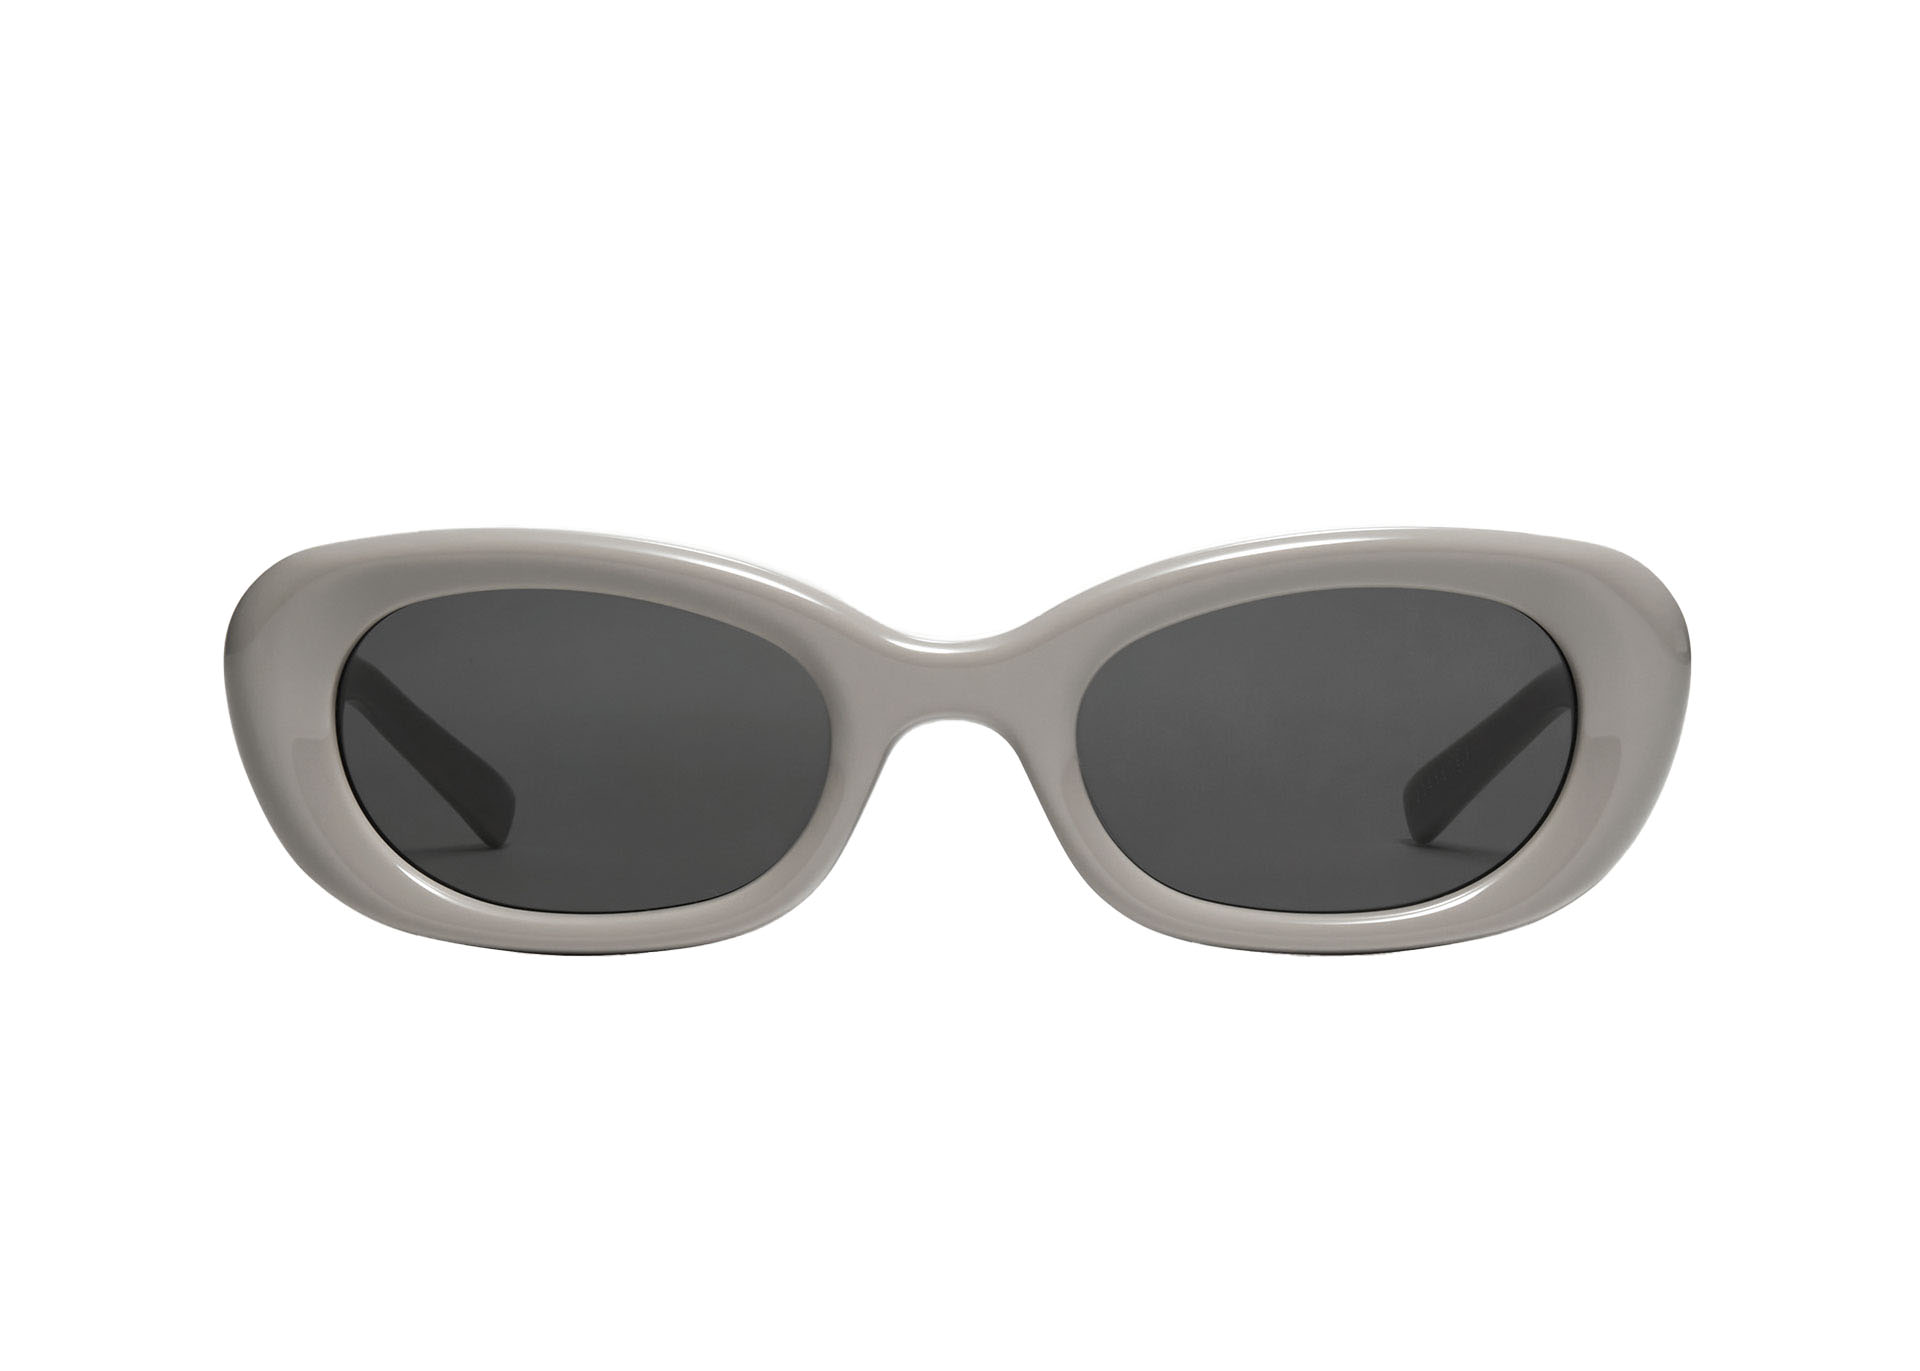 Gentle Monster Maison Margiela Oval Sunglasses Gray MM005 G10 in 